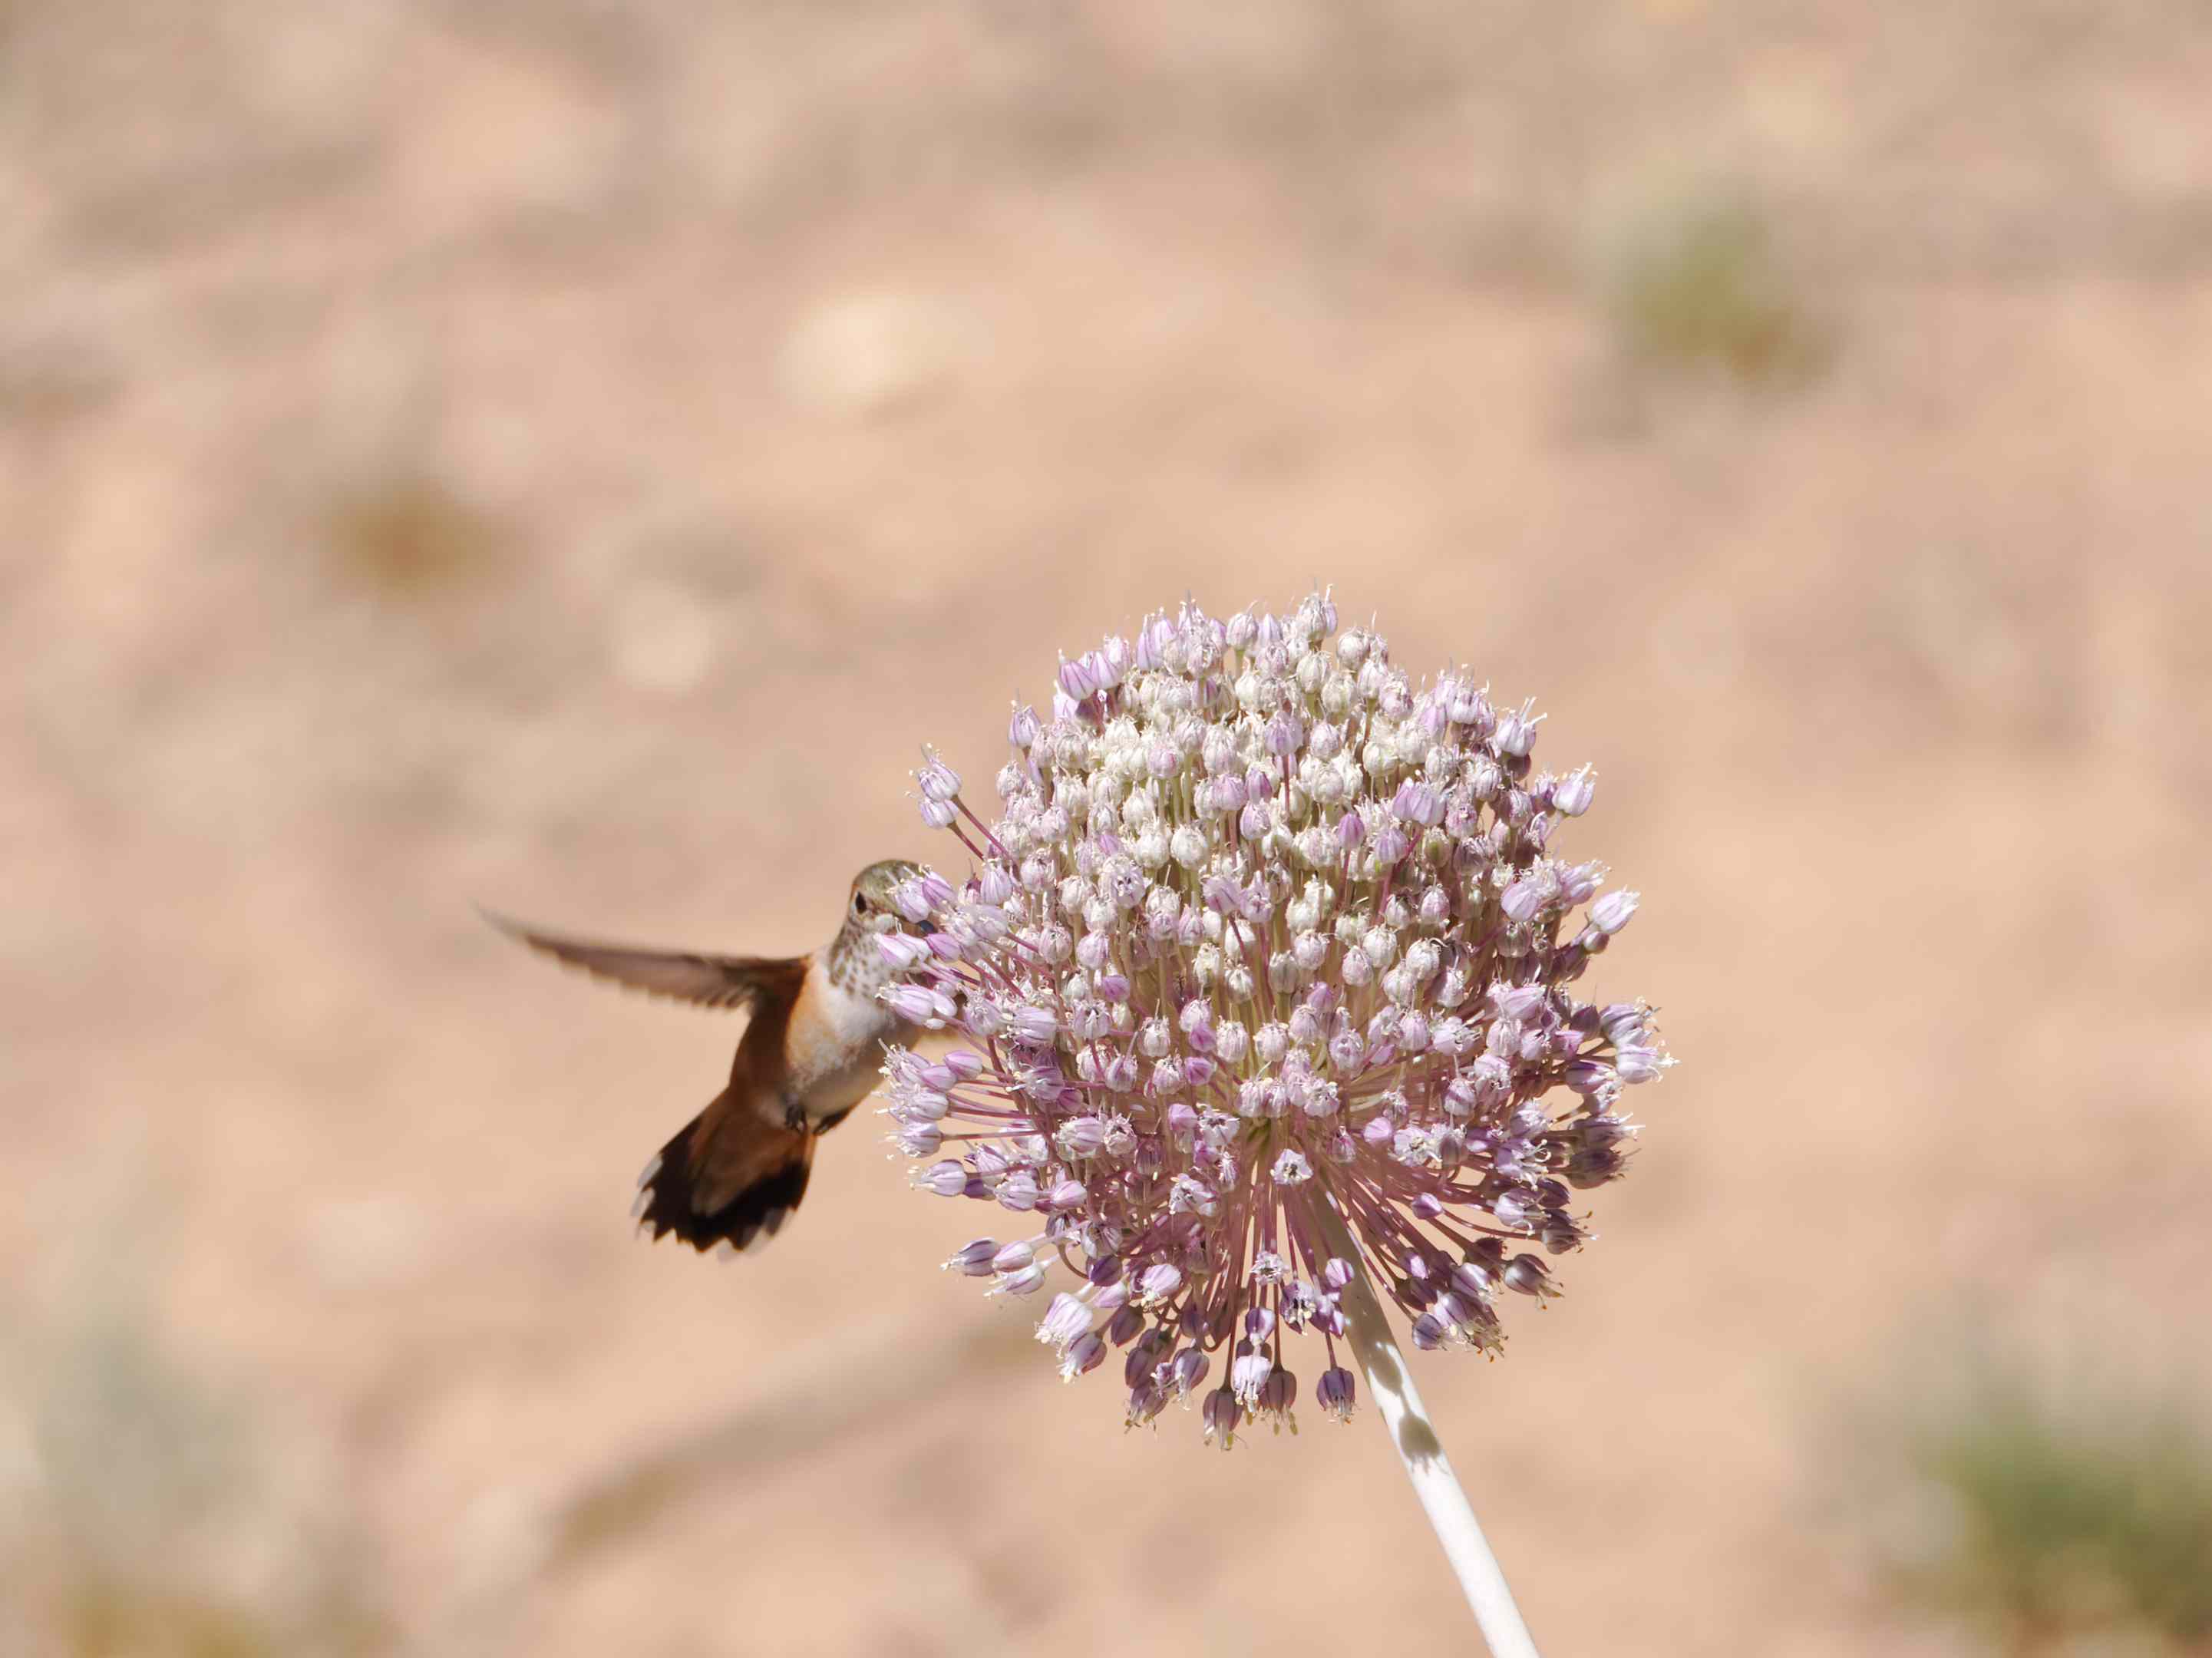 棕色的小蜂鸟俯冲而下，以大紫色三叶草的花为食